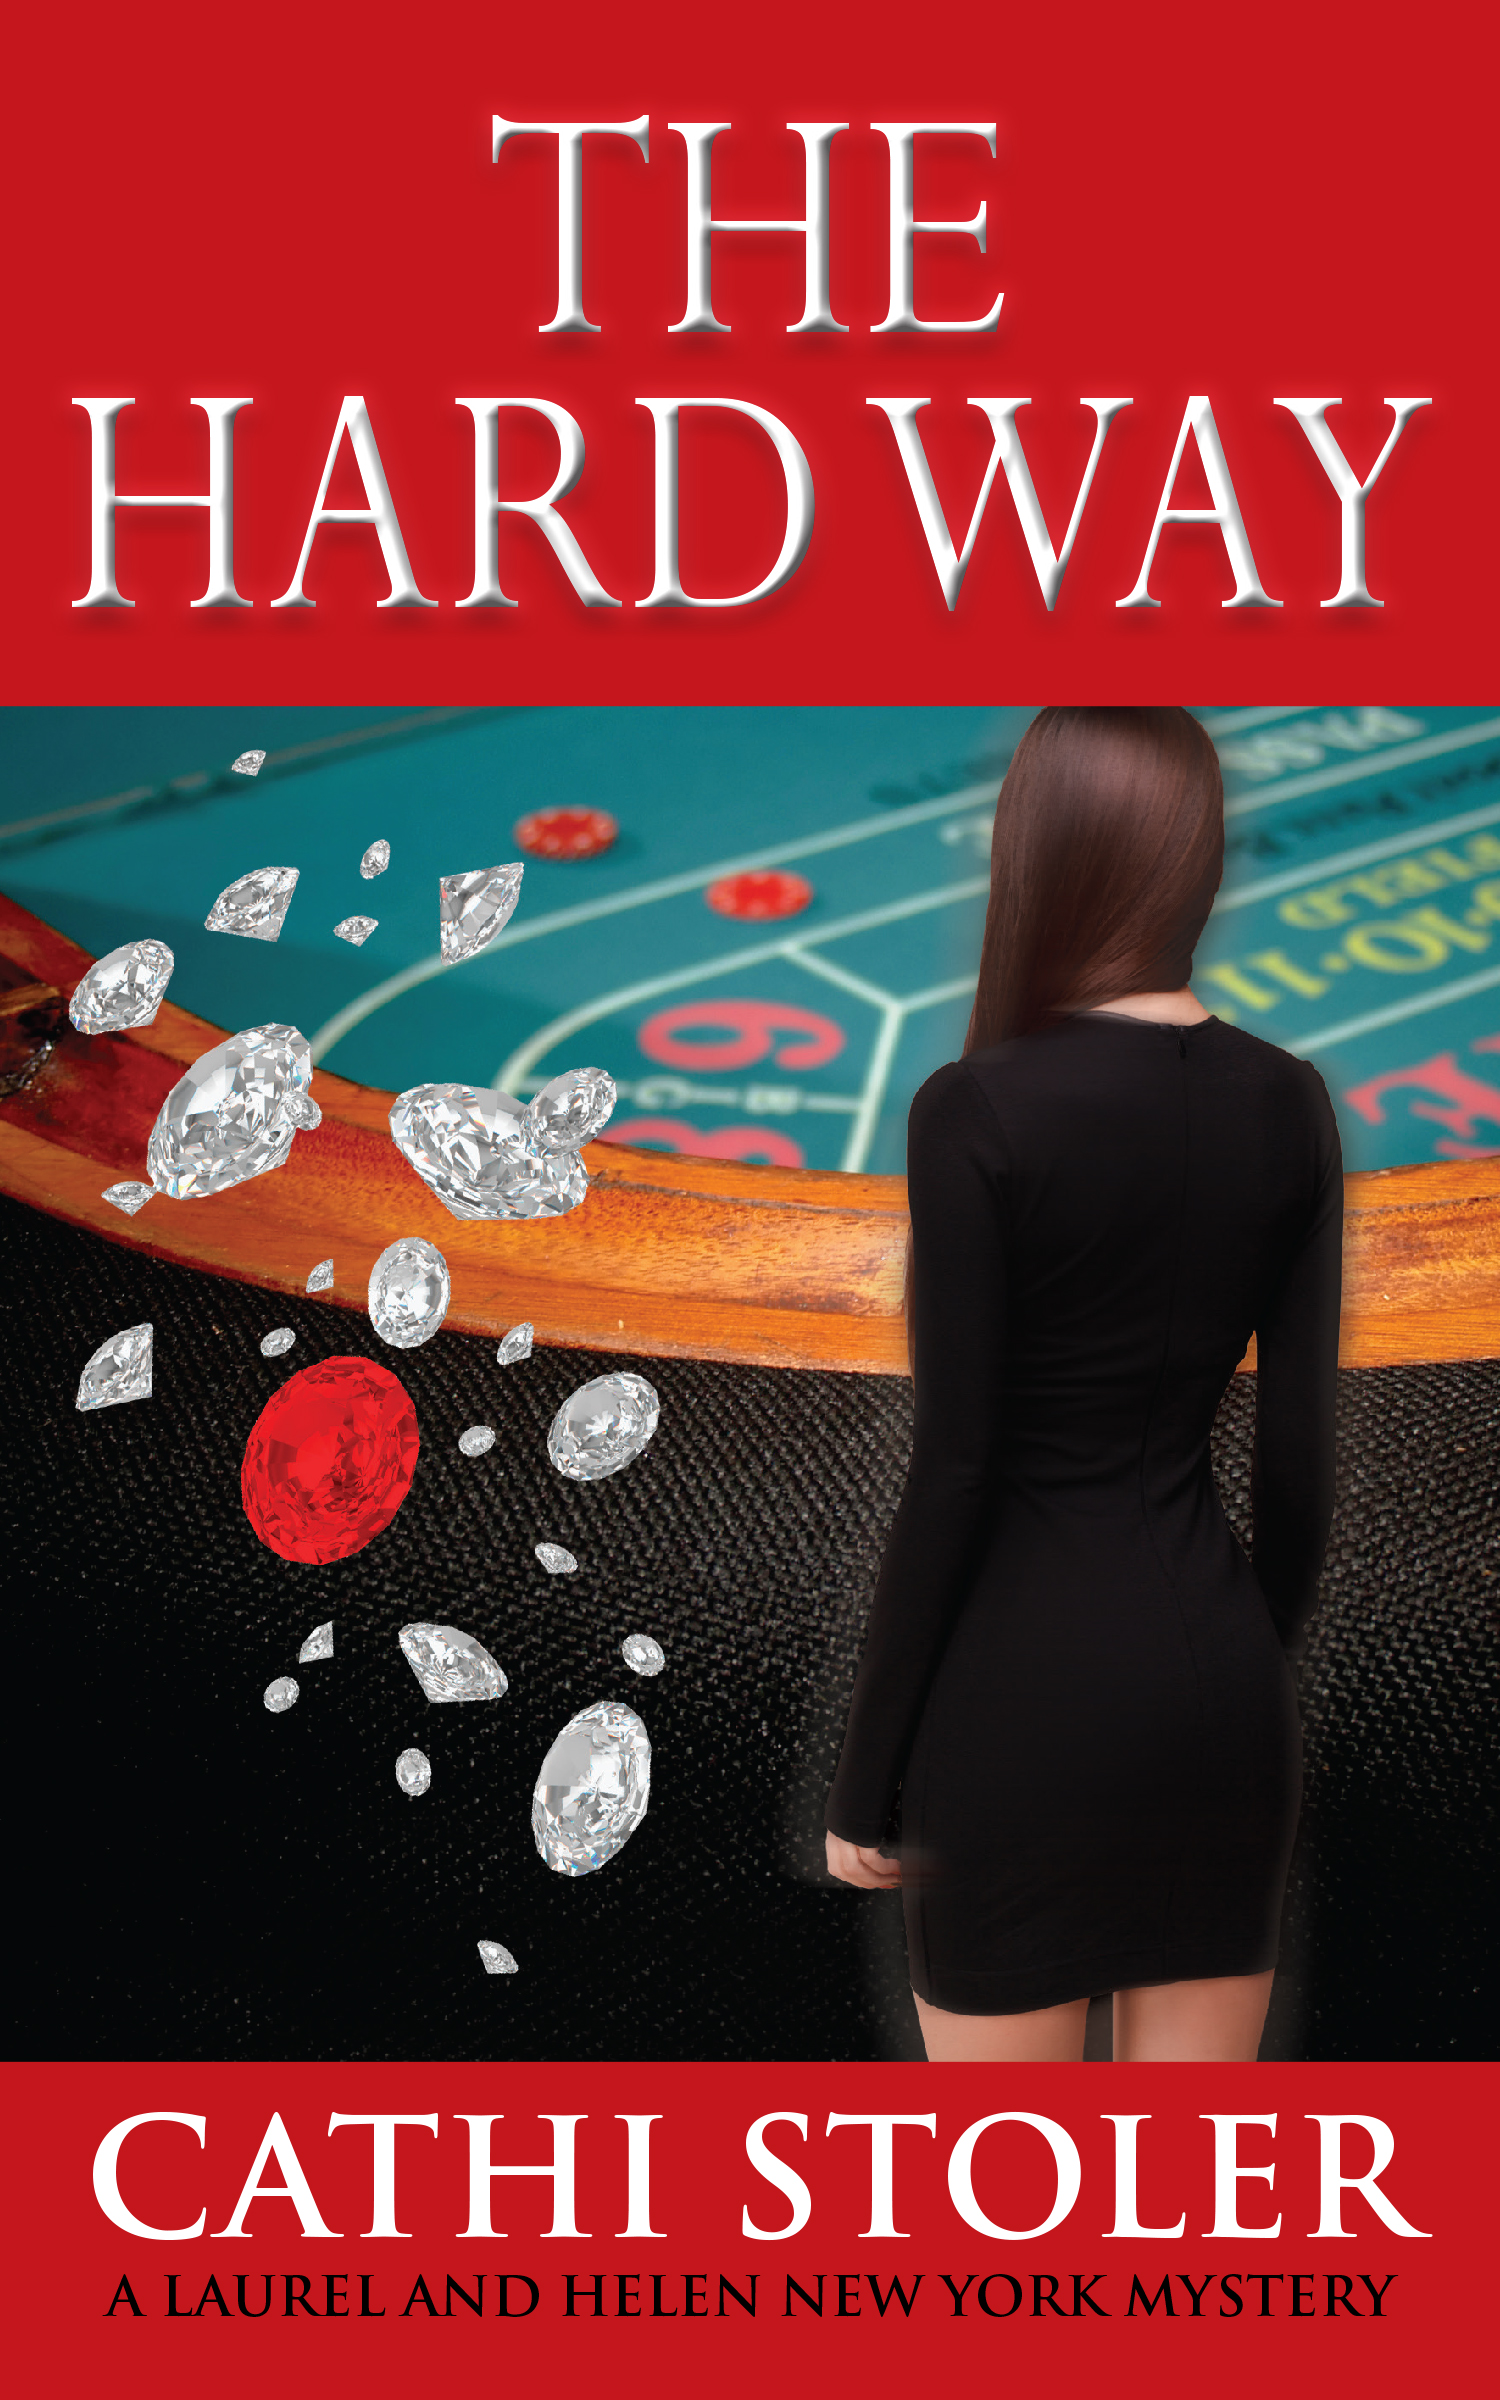 hard_way_300